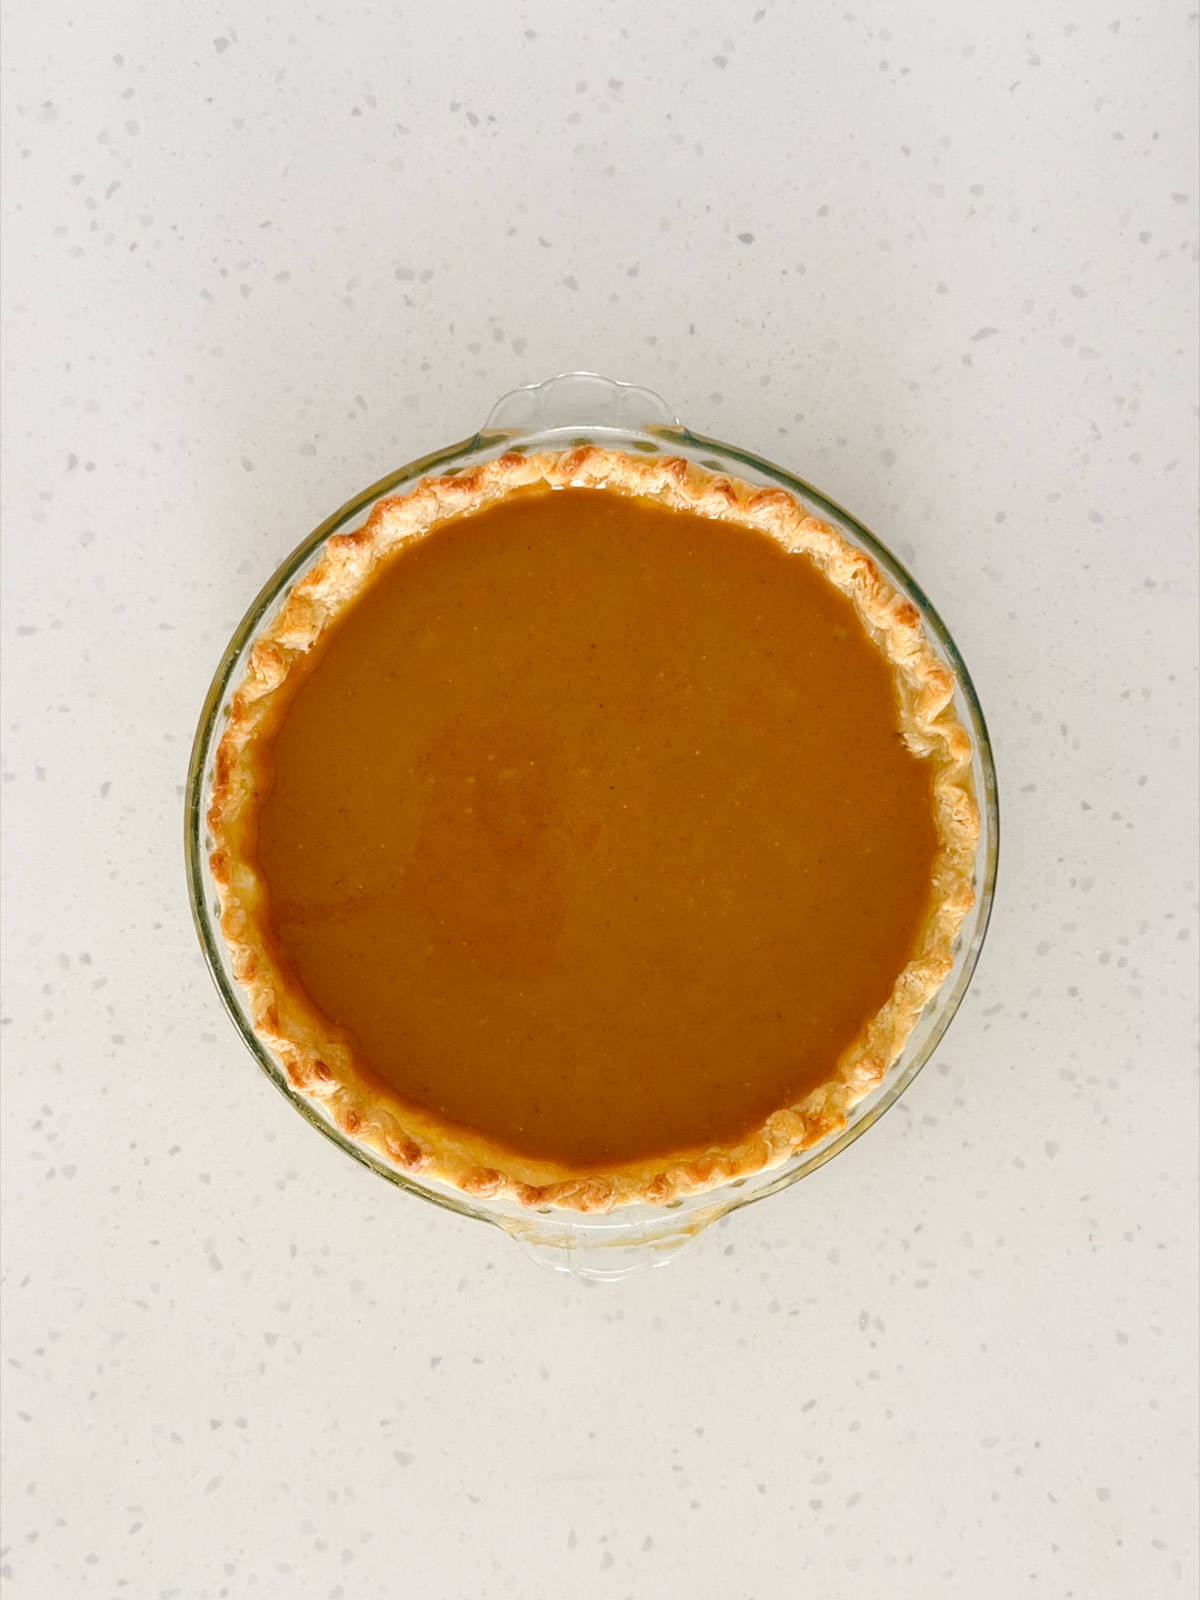 Pumpkin pie filling is poured into the par-baked pie crust.